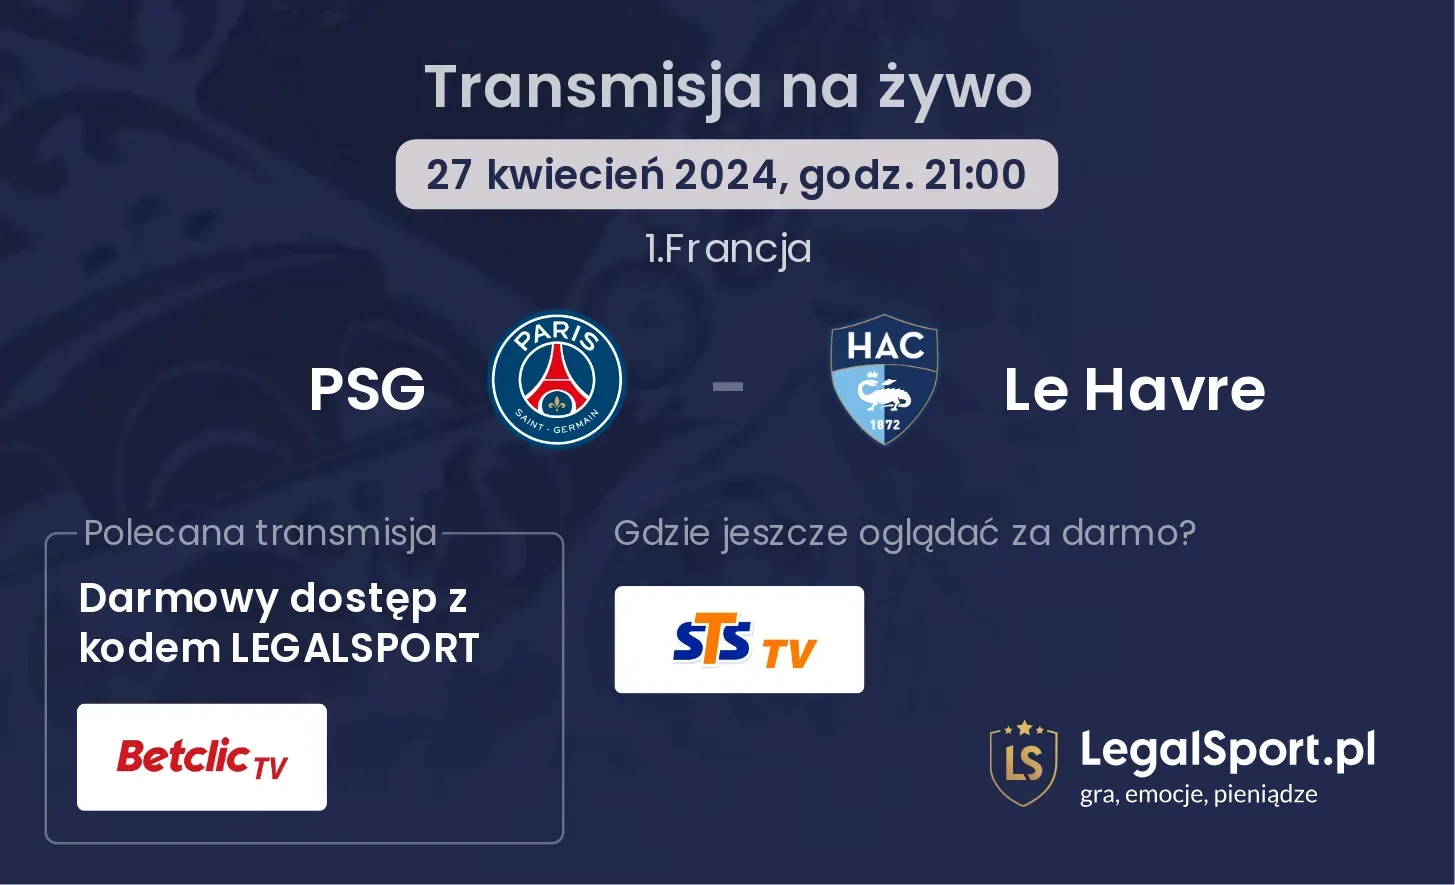 PSG - Le Havre transmisja na żywo